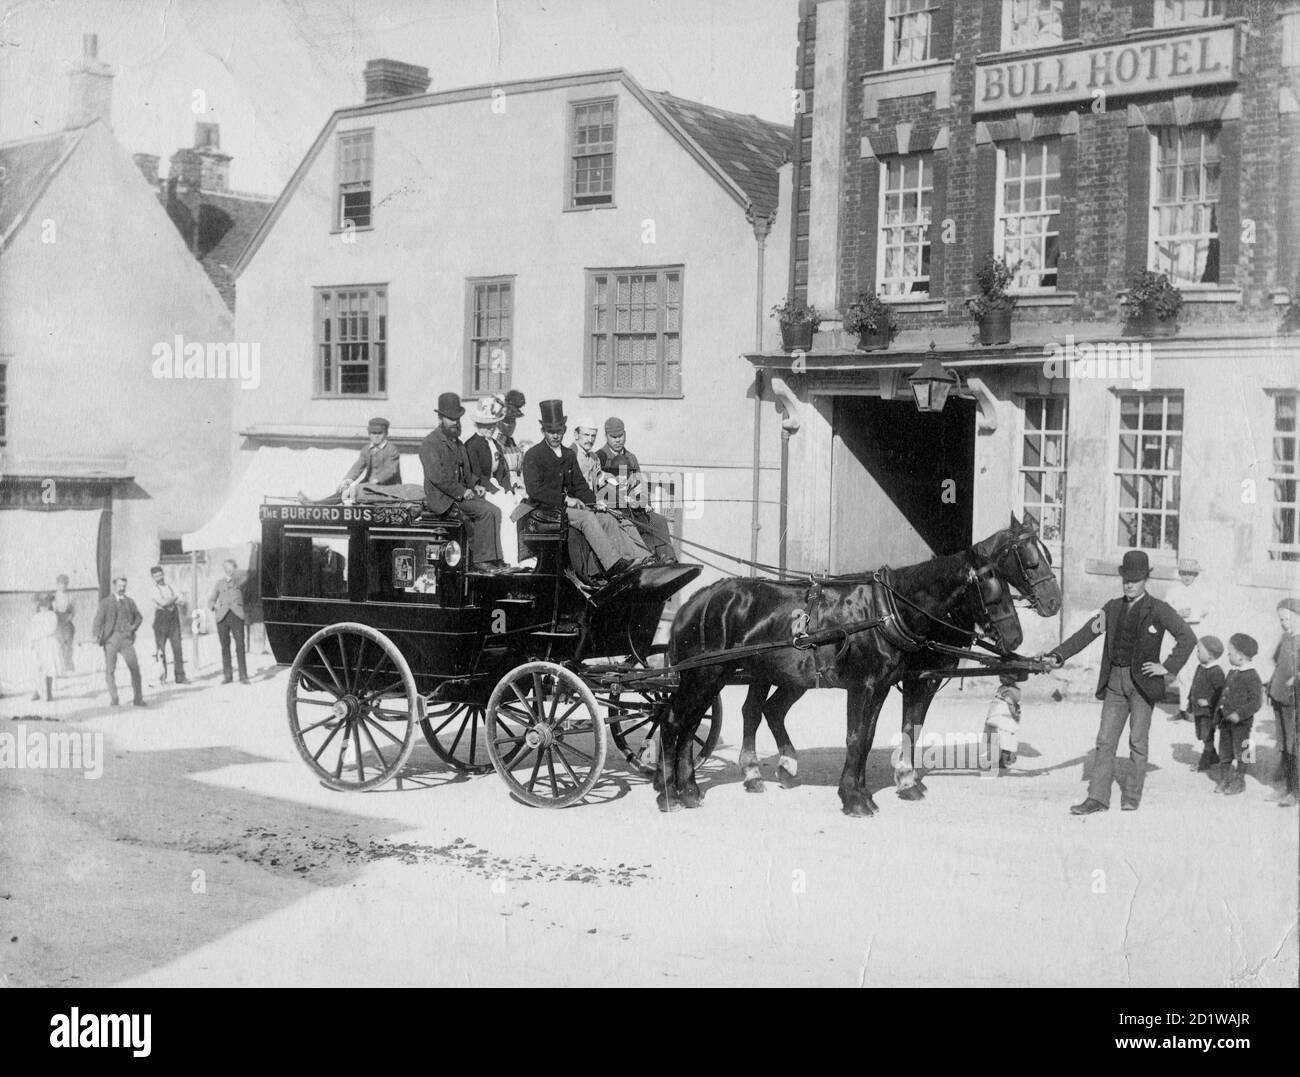 High Street, Burford, West Oxfordshire, Oxfordshire. Un bus tiré par des chevaux et des passagers attendent dans la rue devant l'hôtel, à l'origine du XVIe siècle, mais avec une façade du XVIIIe siècle, sous la surveillance d'enfants locaux. Banque D'Images